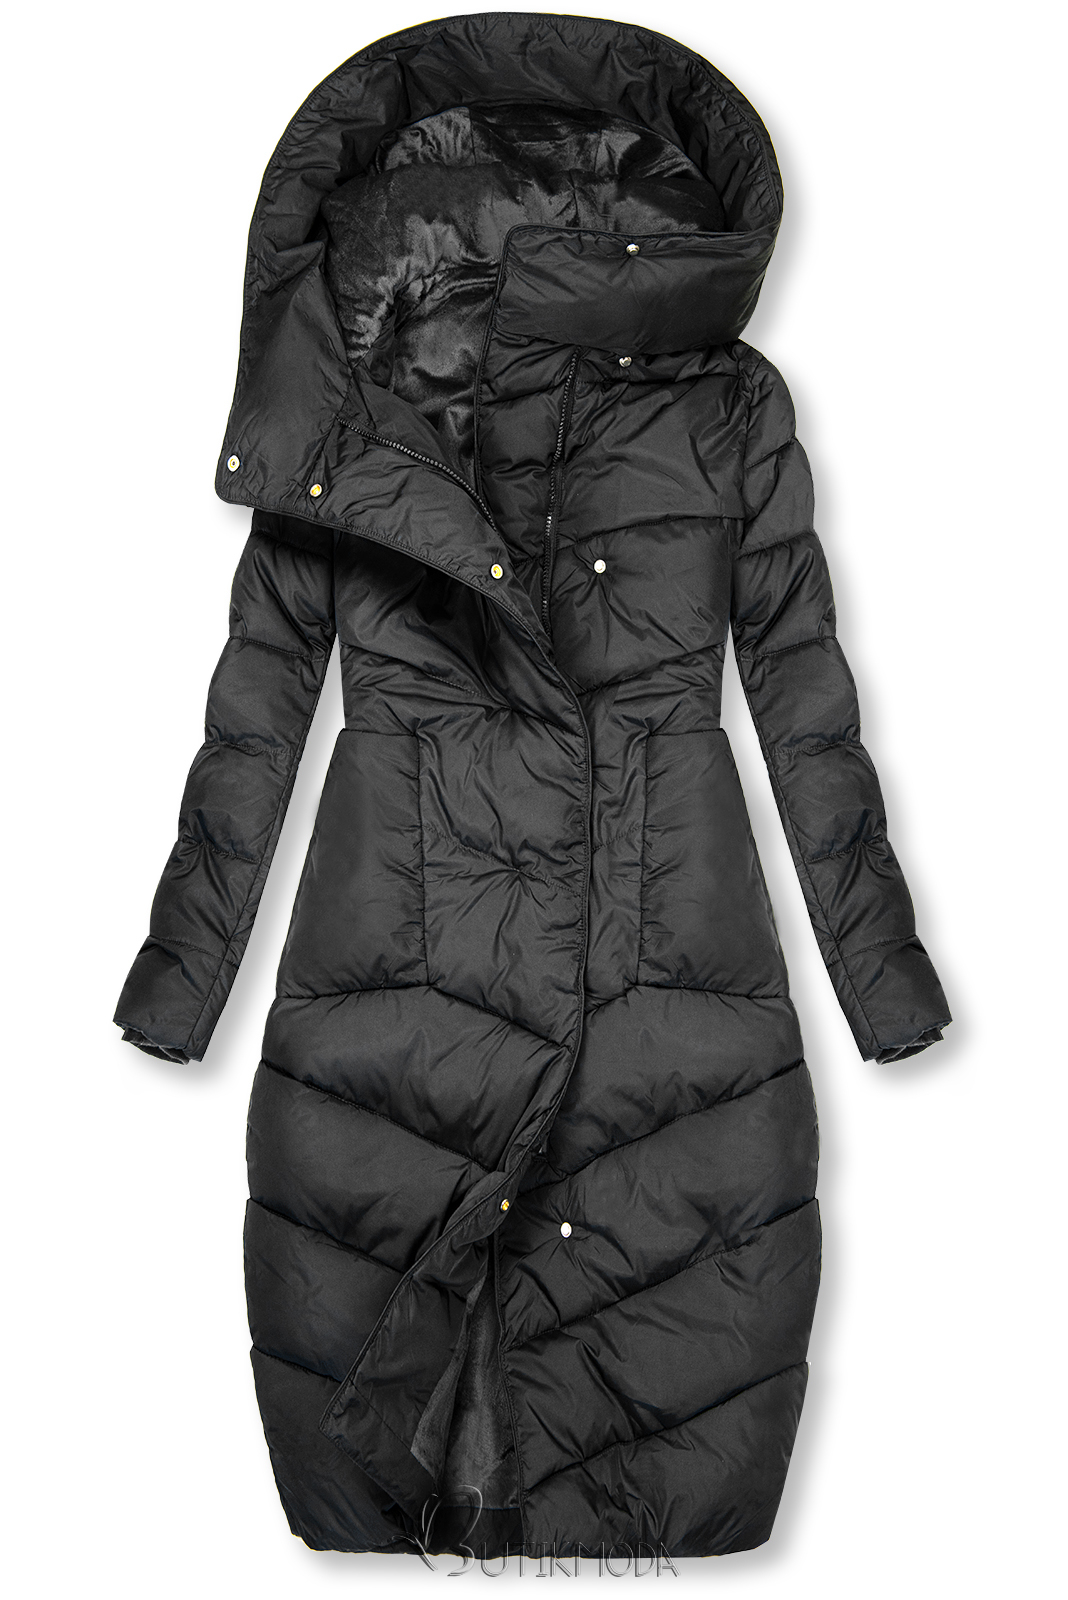 Fekete színű téli kabát magas gallérral